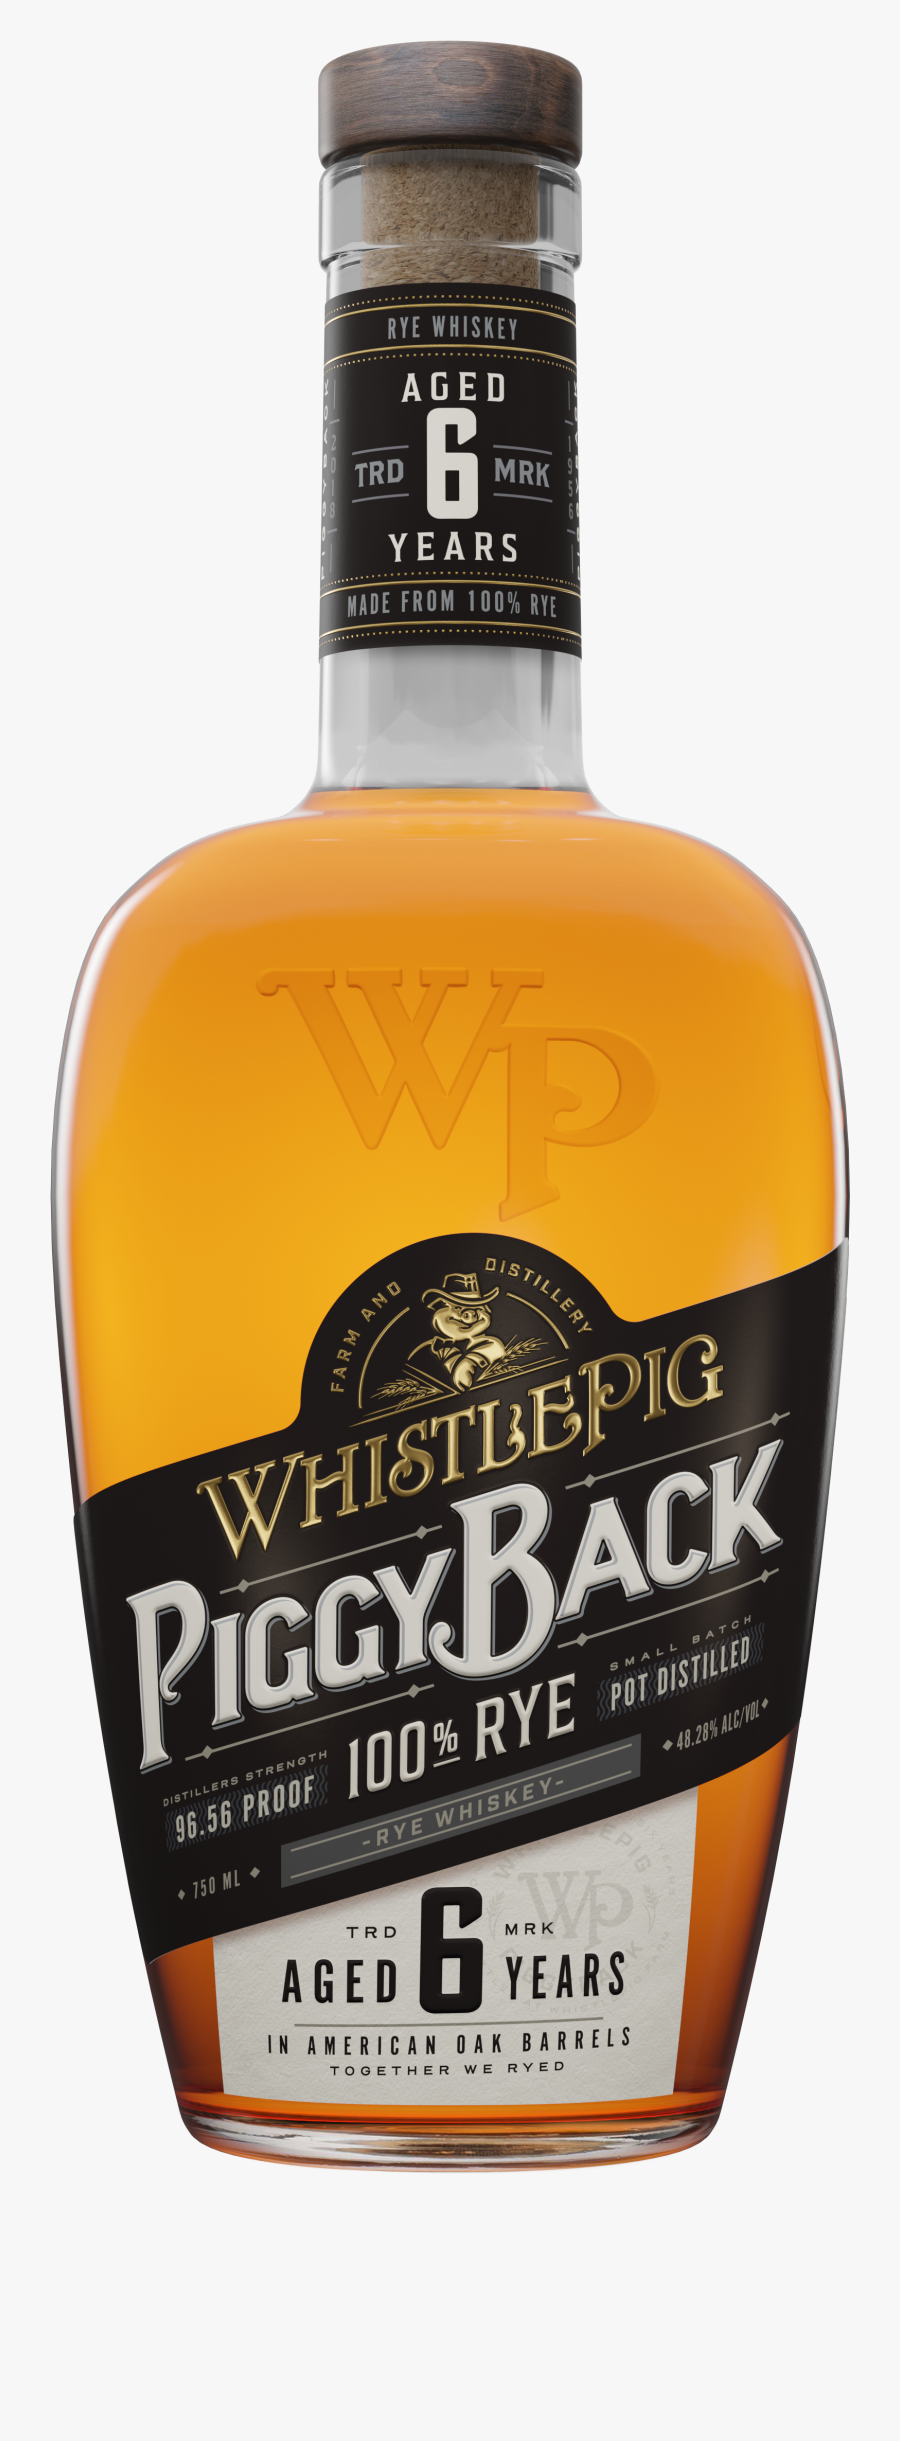 Whistle Pig Piggy Back, Transparent Clipart